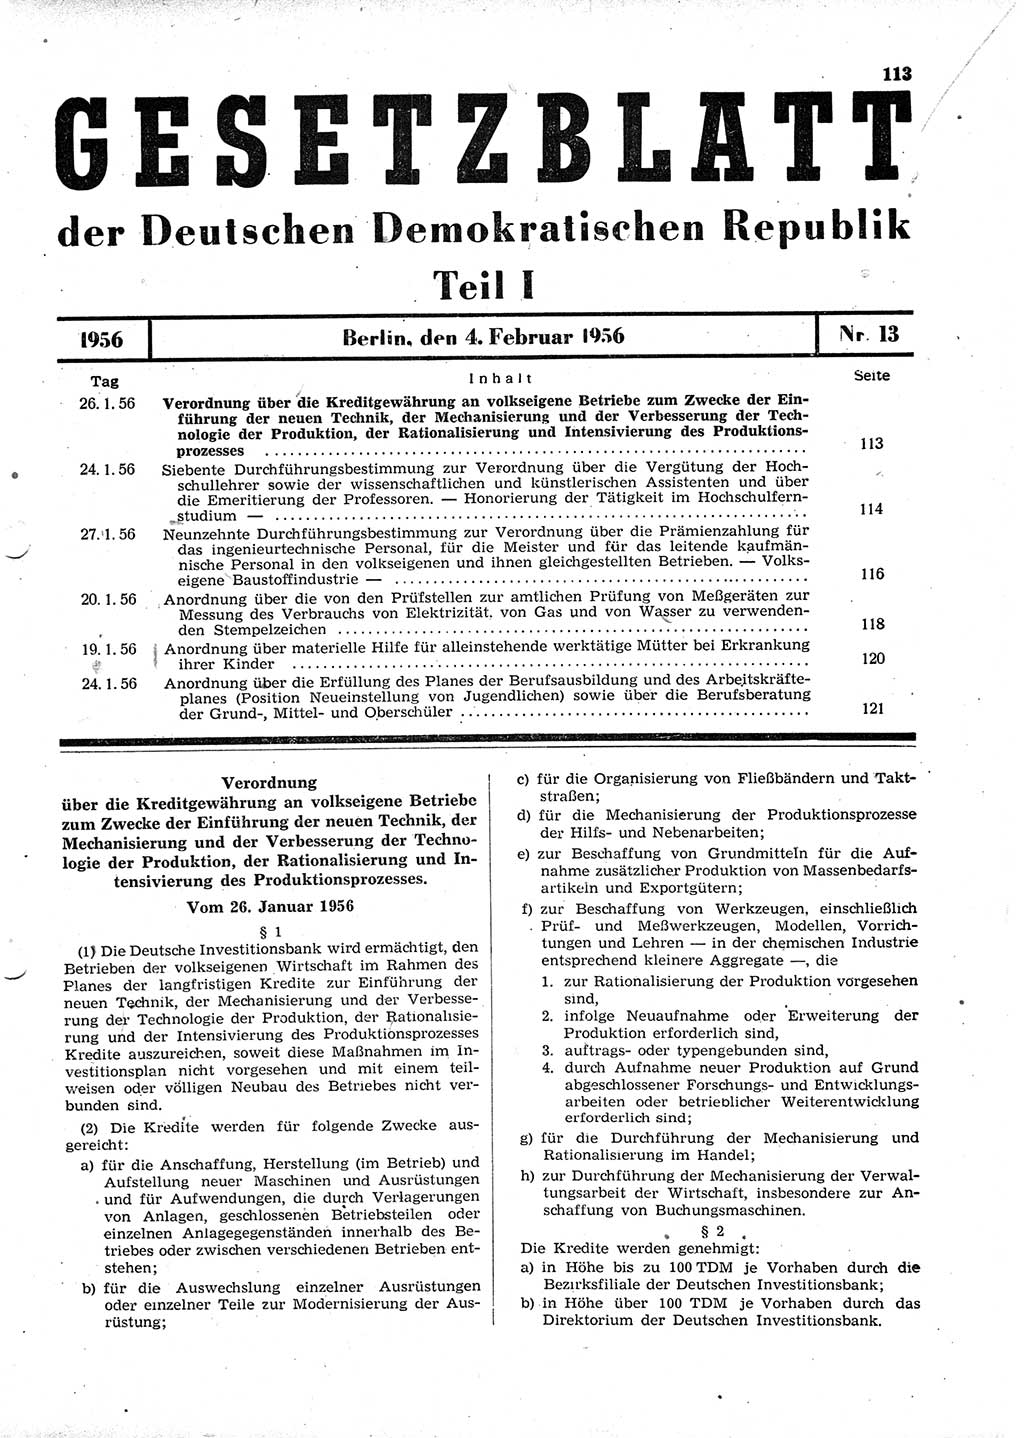 Gesetzblatt (GBl.) der Deutschen Demokratischen Republik (DDR) Teil Ⅰ 1956, Seite 113 (GBl. DDR Ⅰ 1956, S. 113)